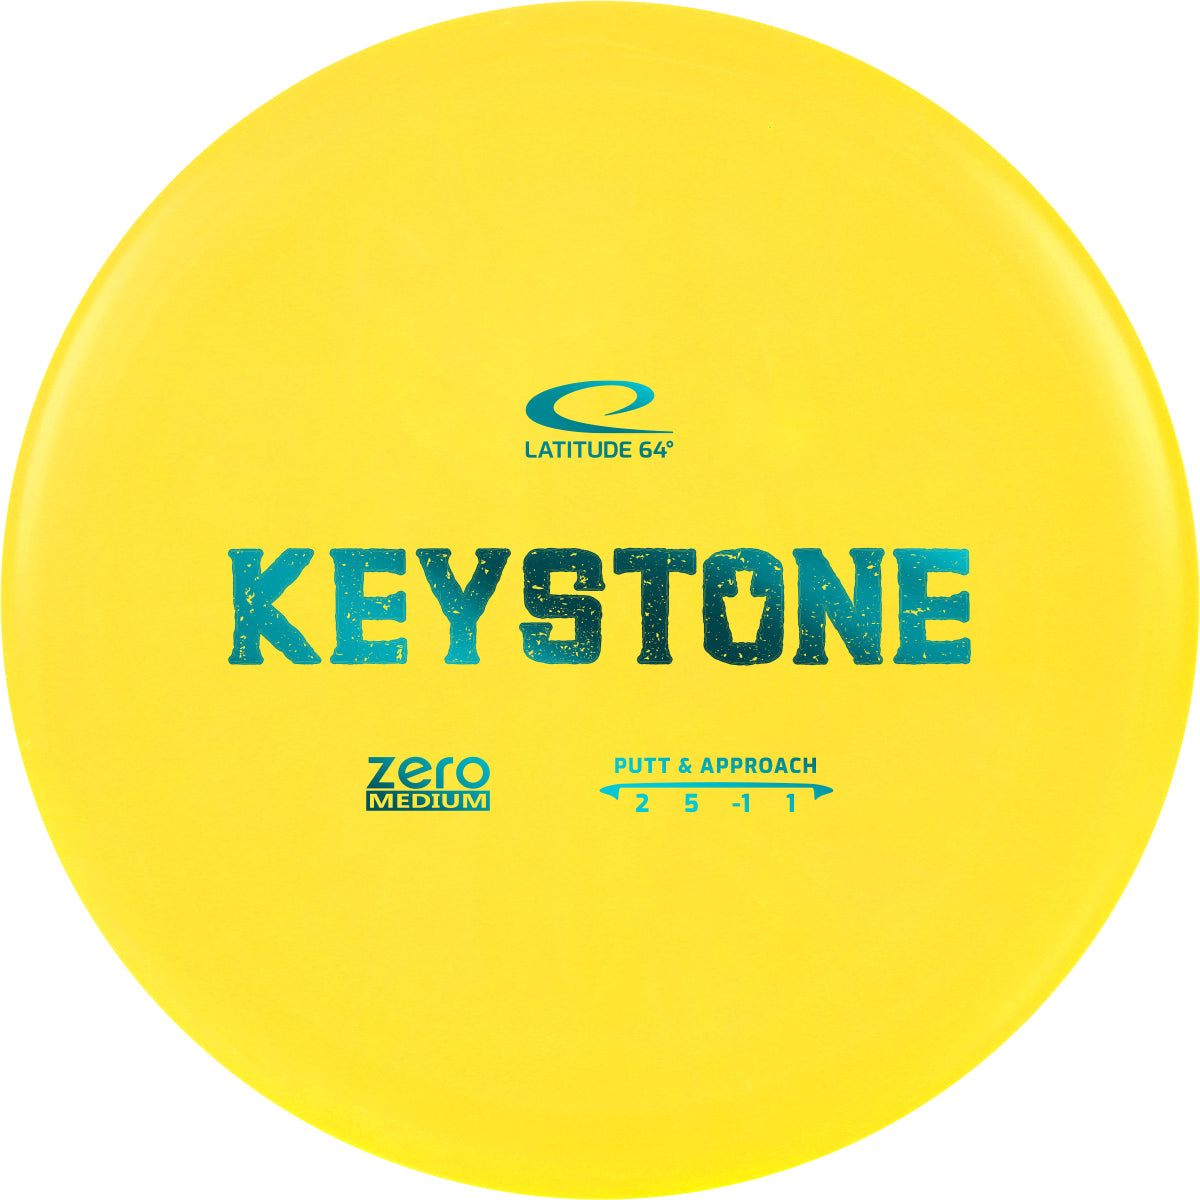 keystone-putter-latitude-64-zero-medium-spain-canasta-cesta-discos-golf-frisbeegolf-discogolf-españa-disc-discgolf